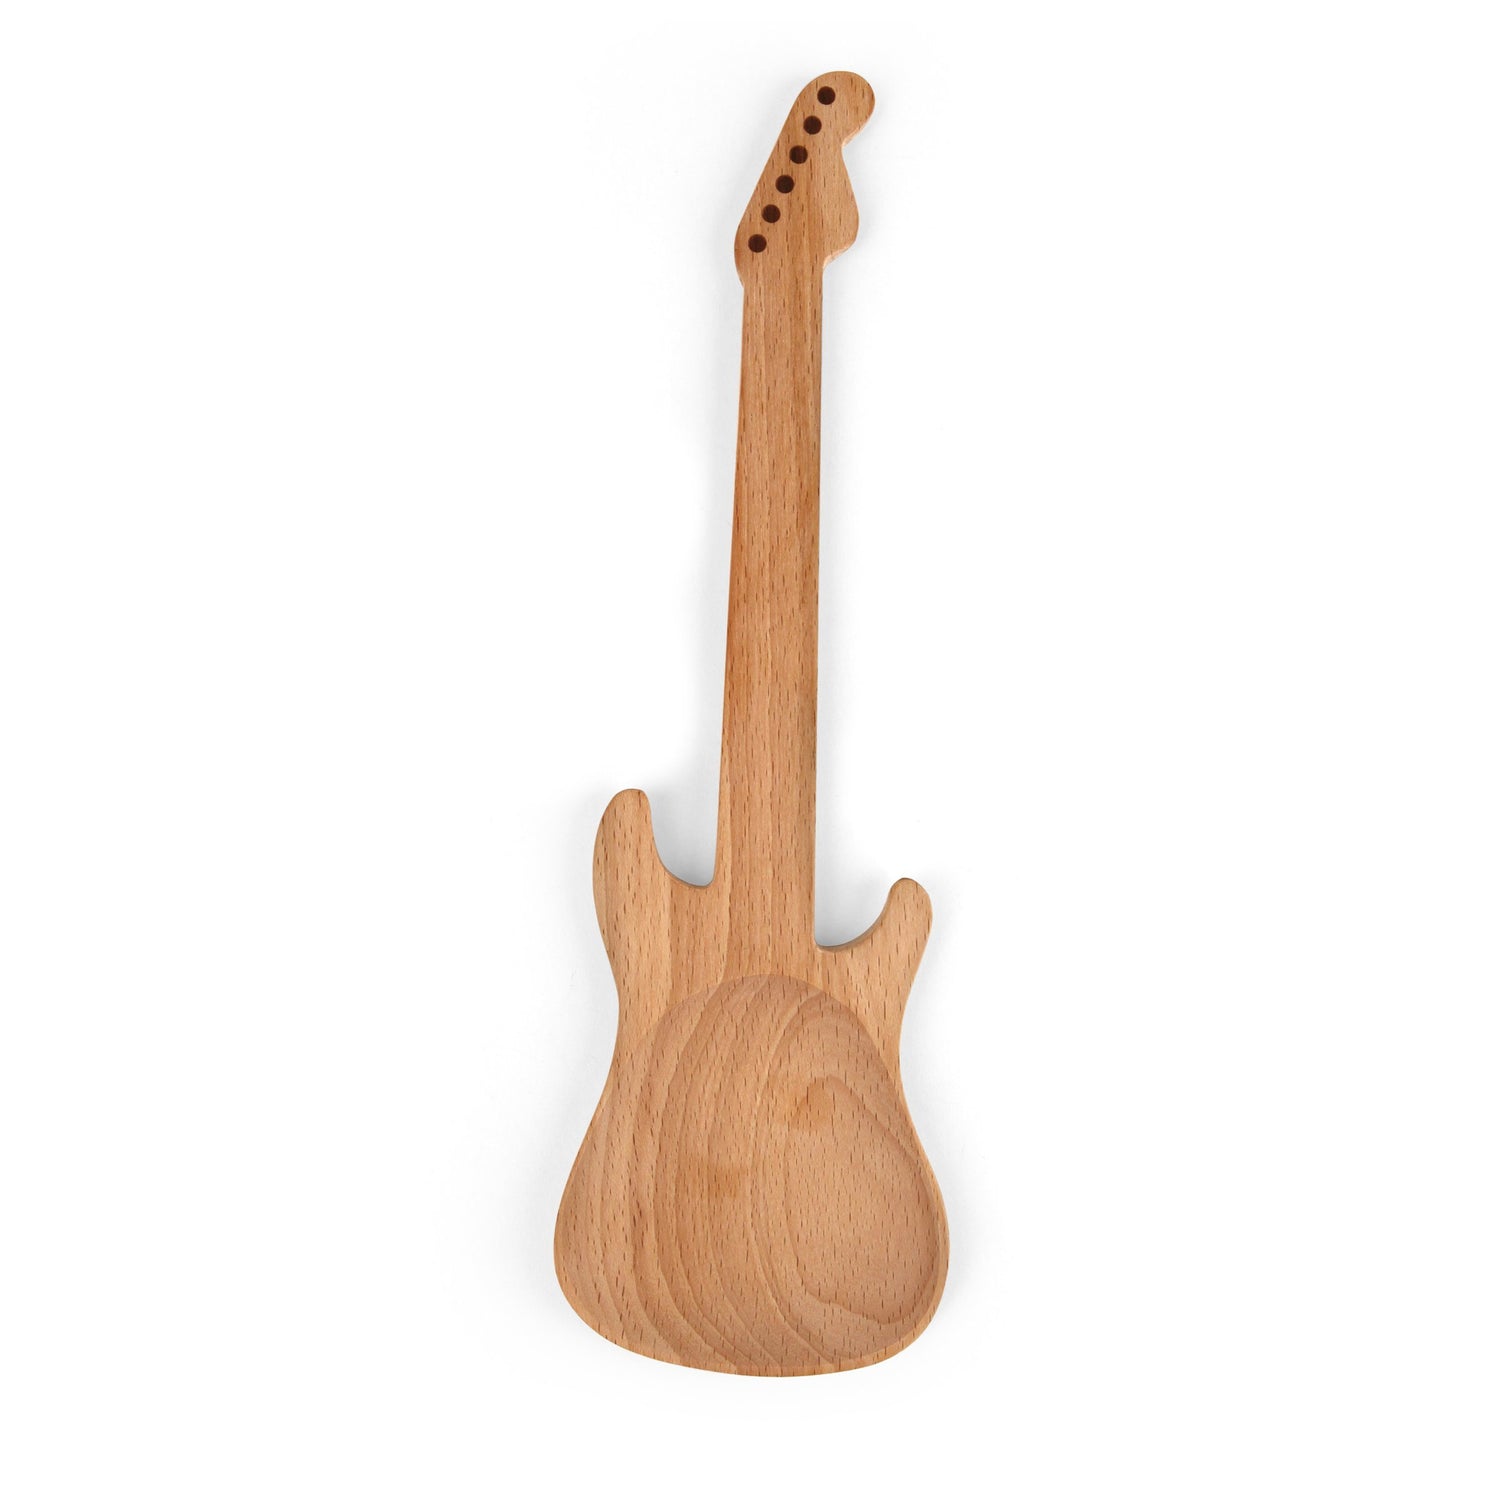 Beech Wood + Rockin gitarr sallad servrar